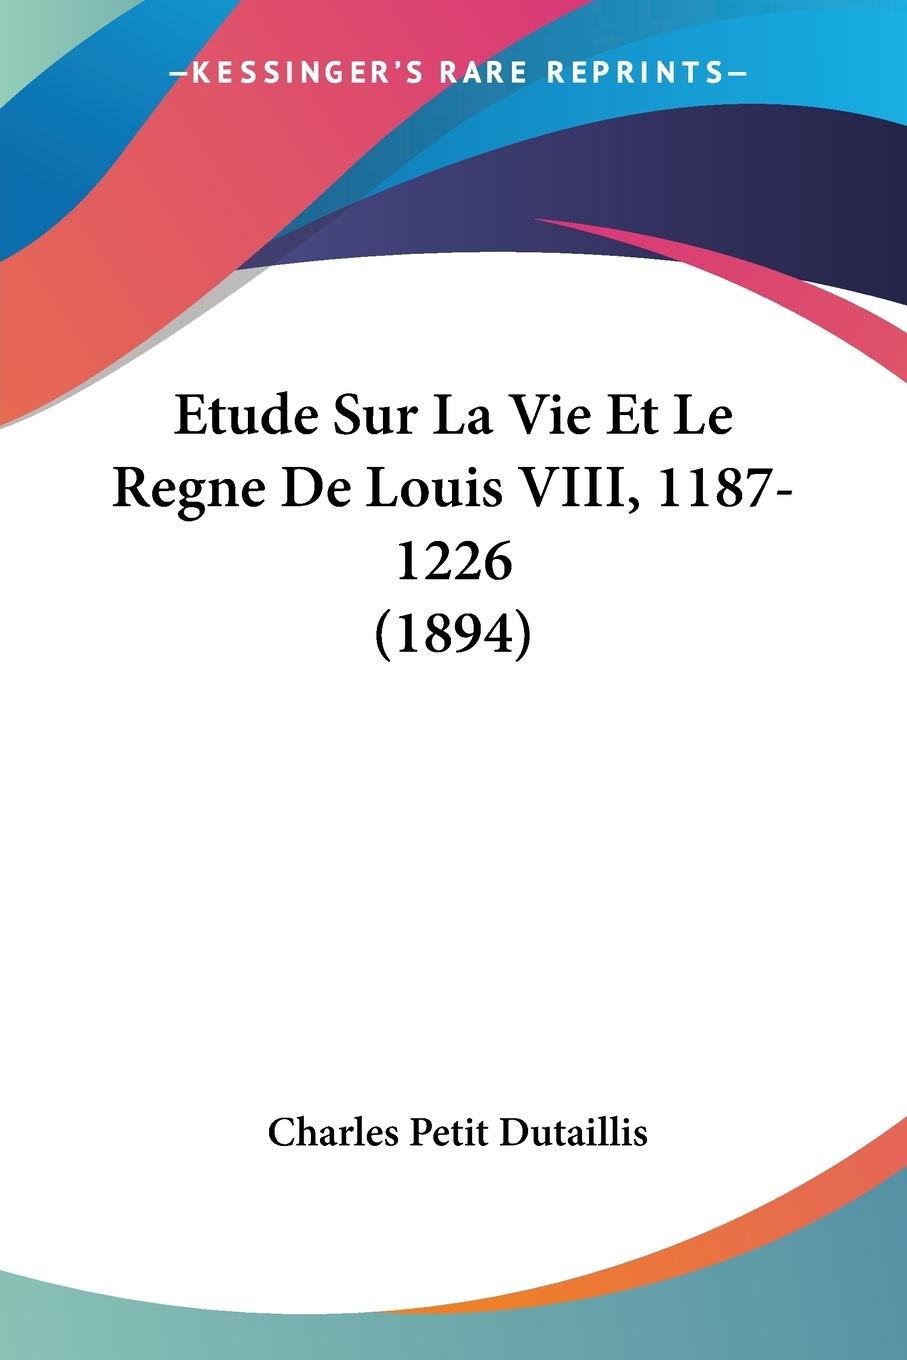 Etude Sur La Vie Et Le Regne De Louis VIII, 1187-1226 (1894) - Dutaillis, Charles Petit